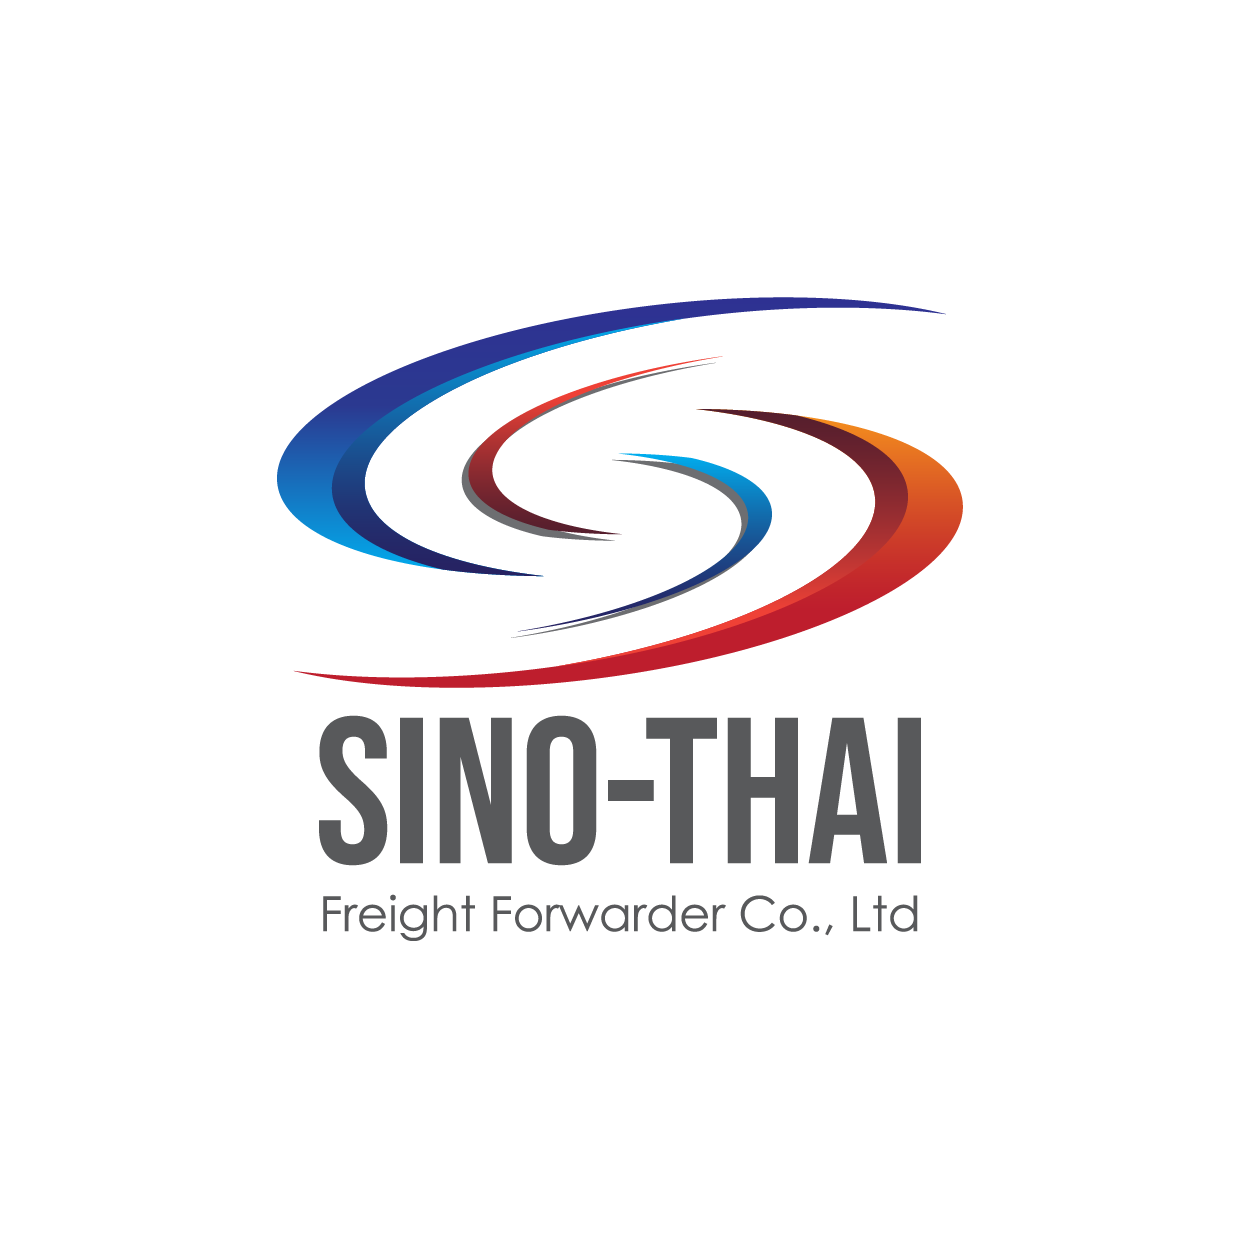 Sino-thai Freight forwarder Co.,Ltd.